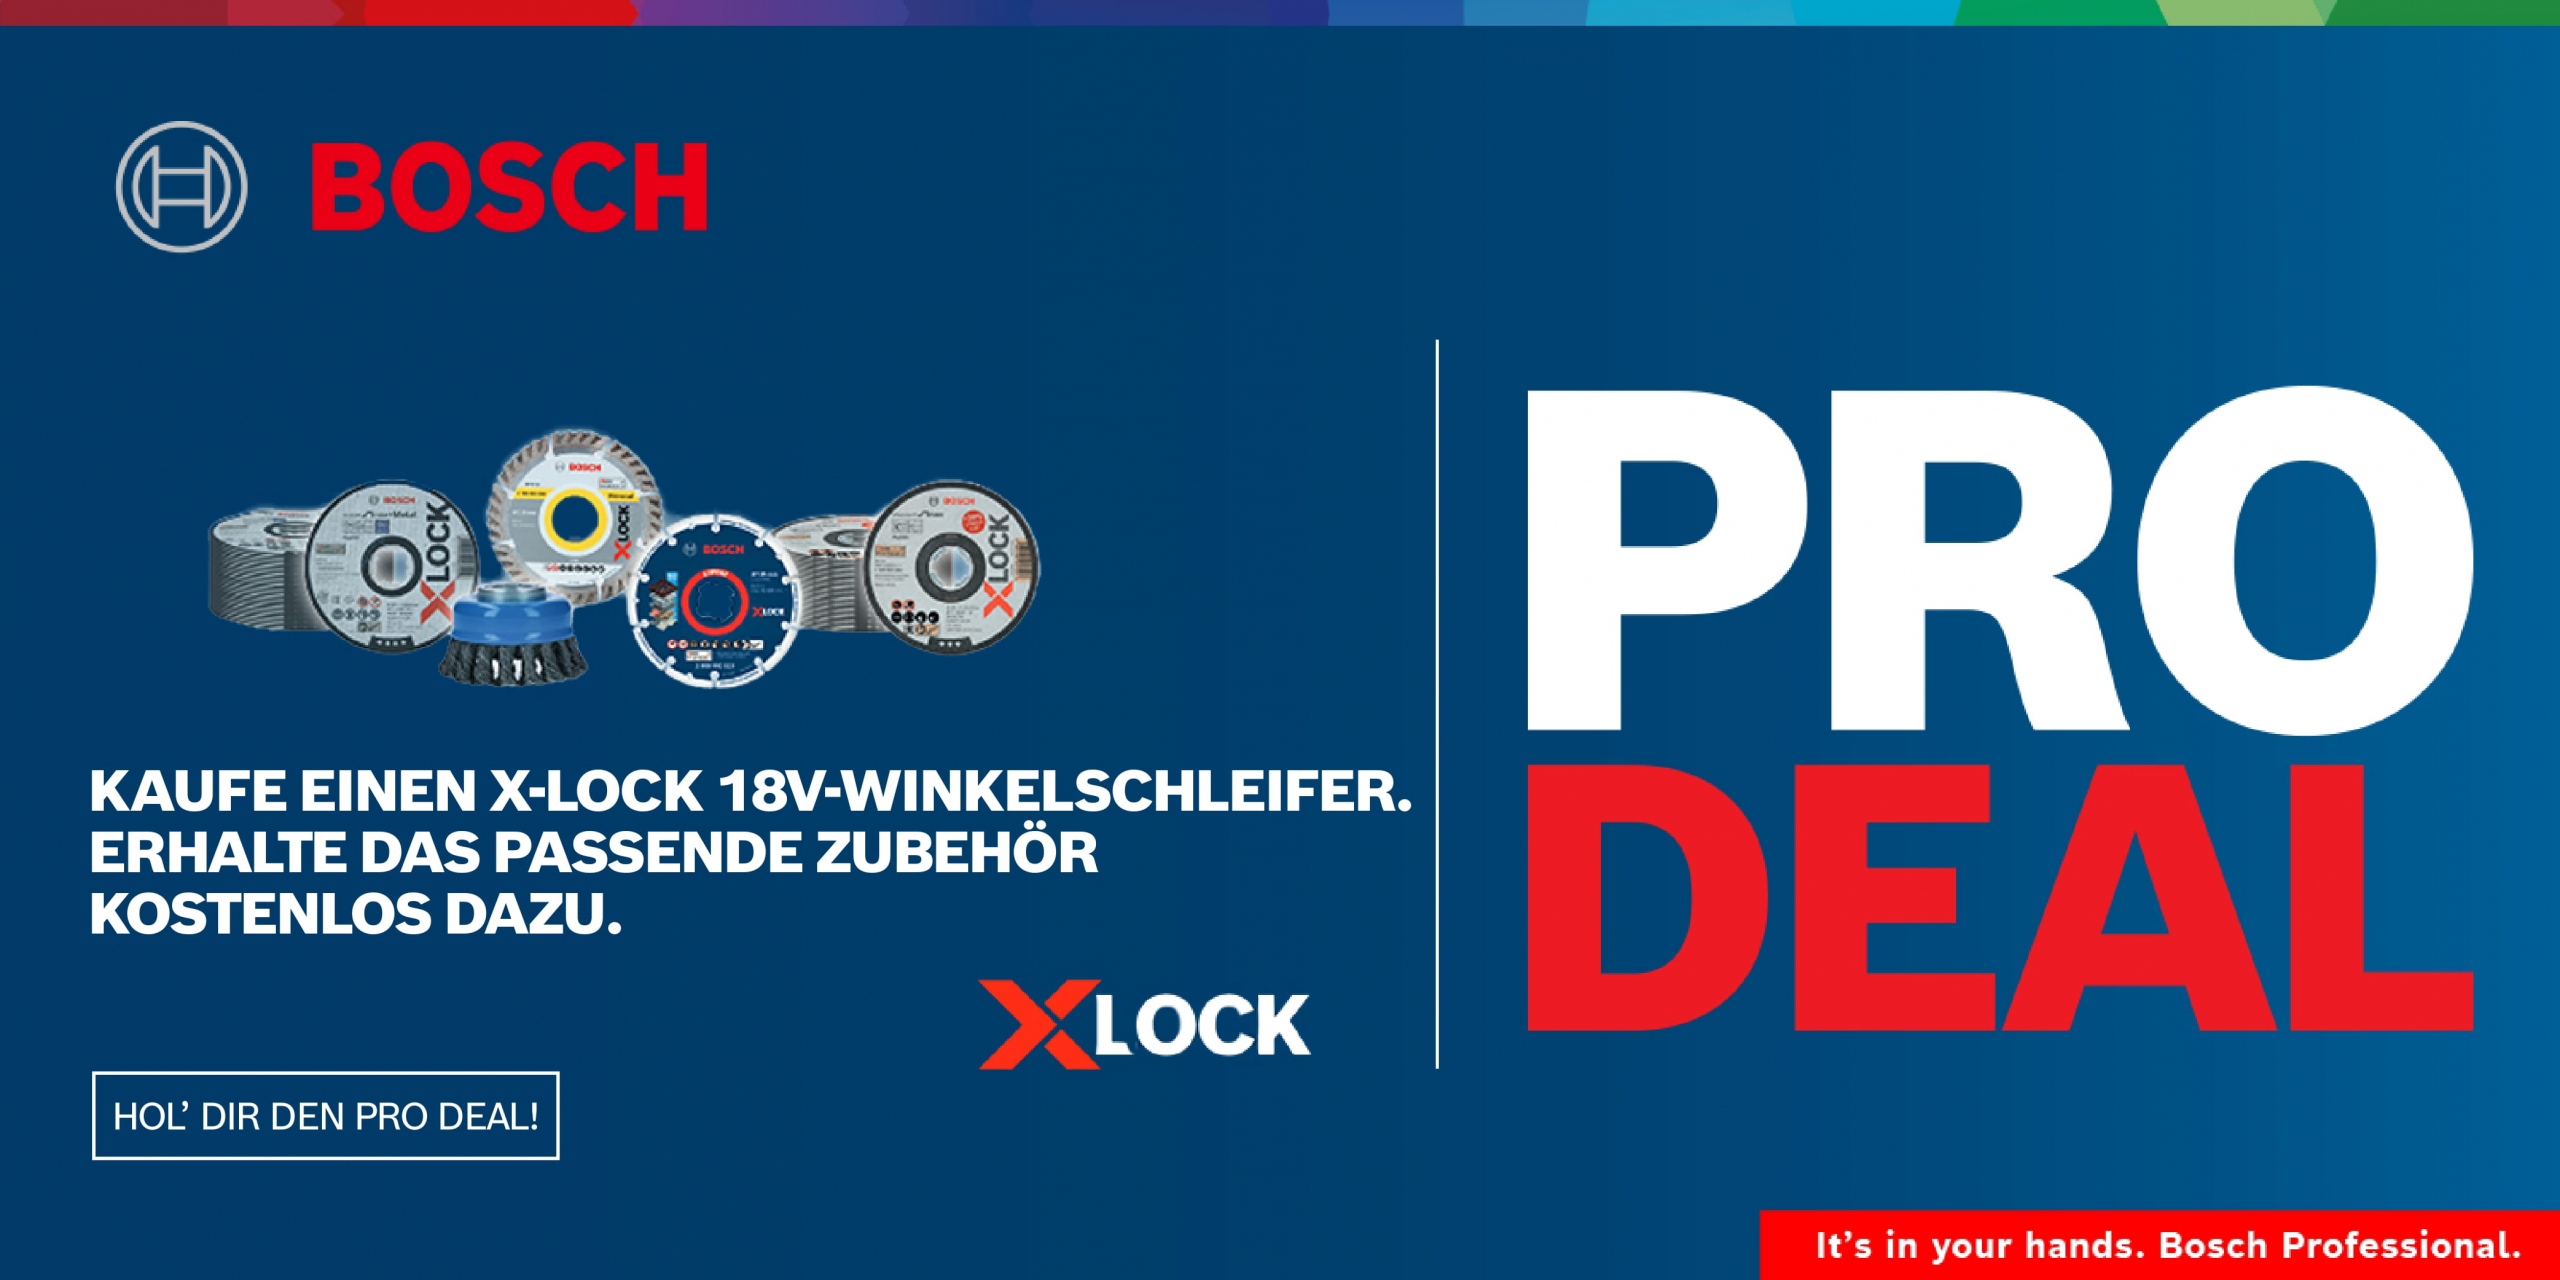 Bosch PRO Deal X-Lock - Bosch Winkelschleifer mit X-Lock Aktion